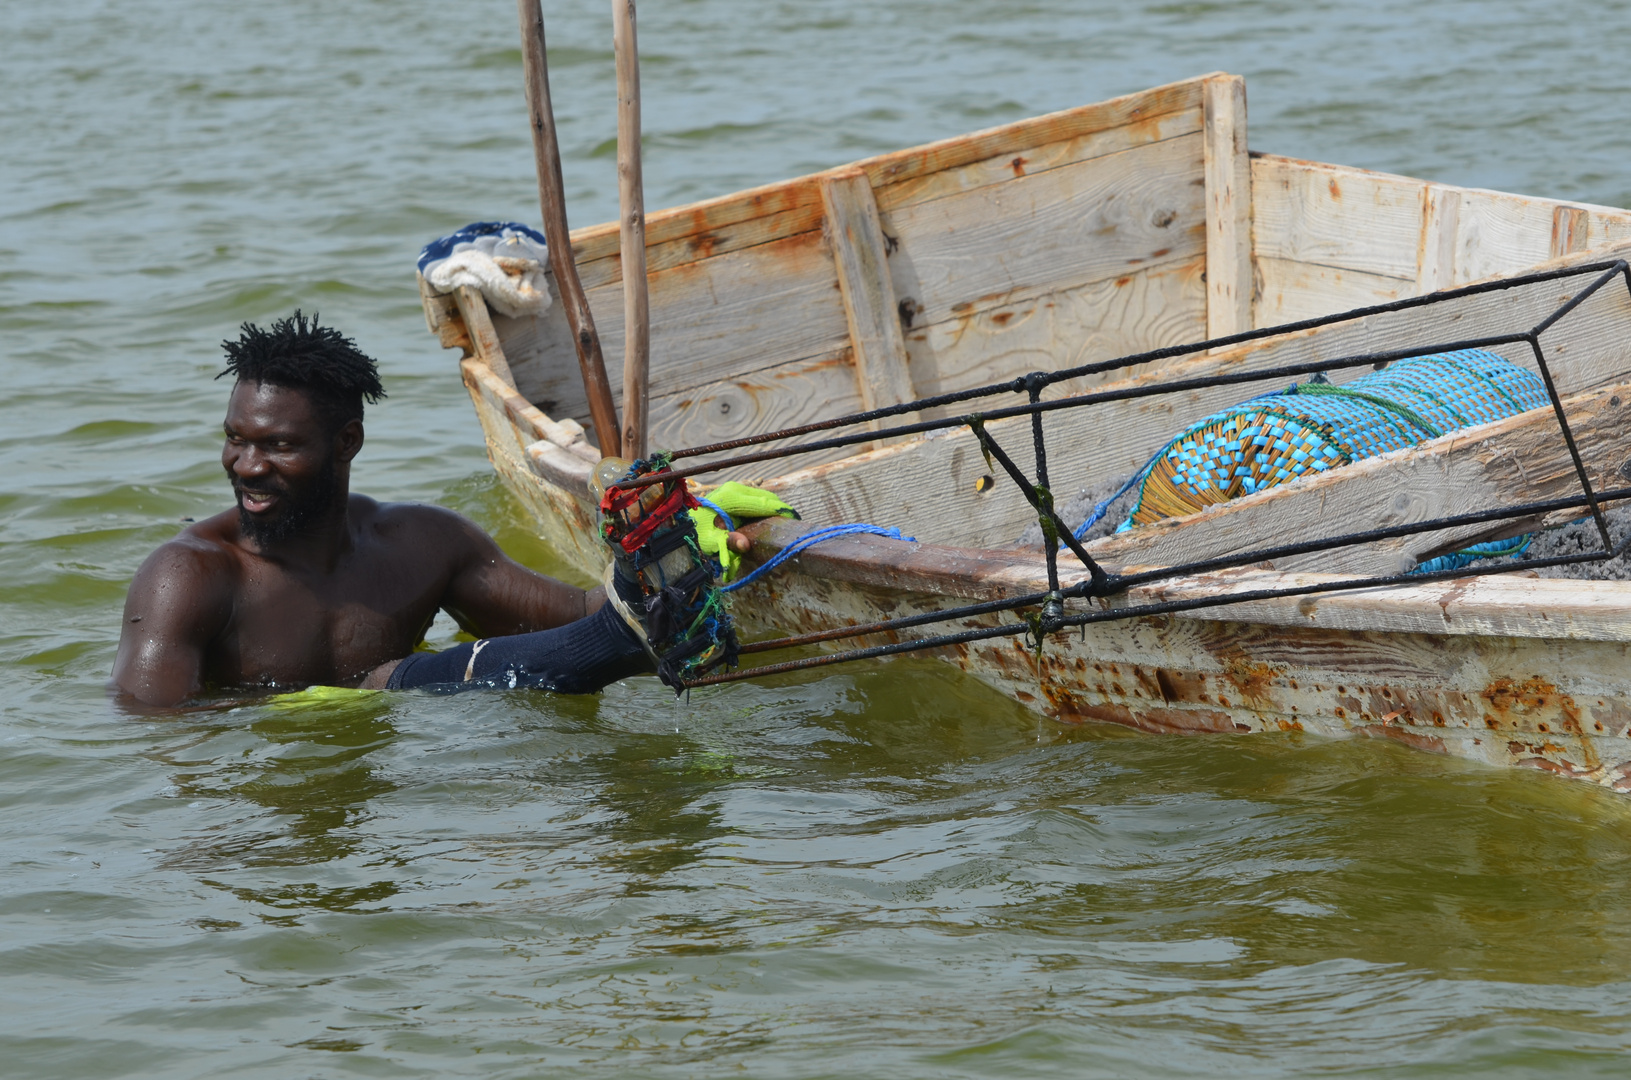 Salzfischer auf dem Lac rose mit den Stelzen auf denen er im Wasser steht. (Senegal)